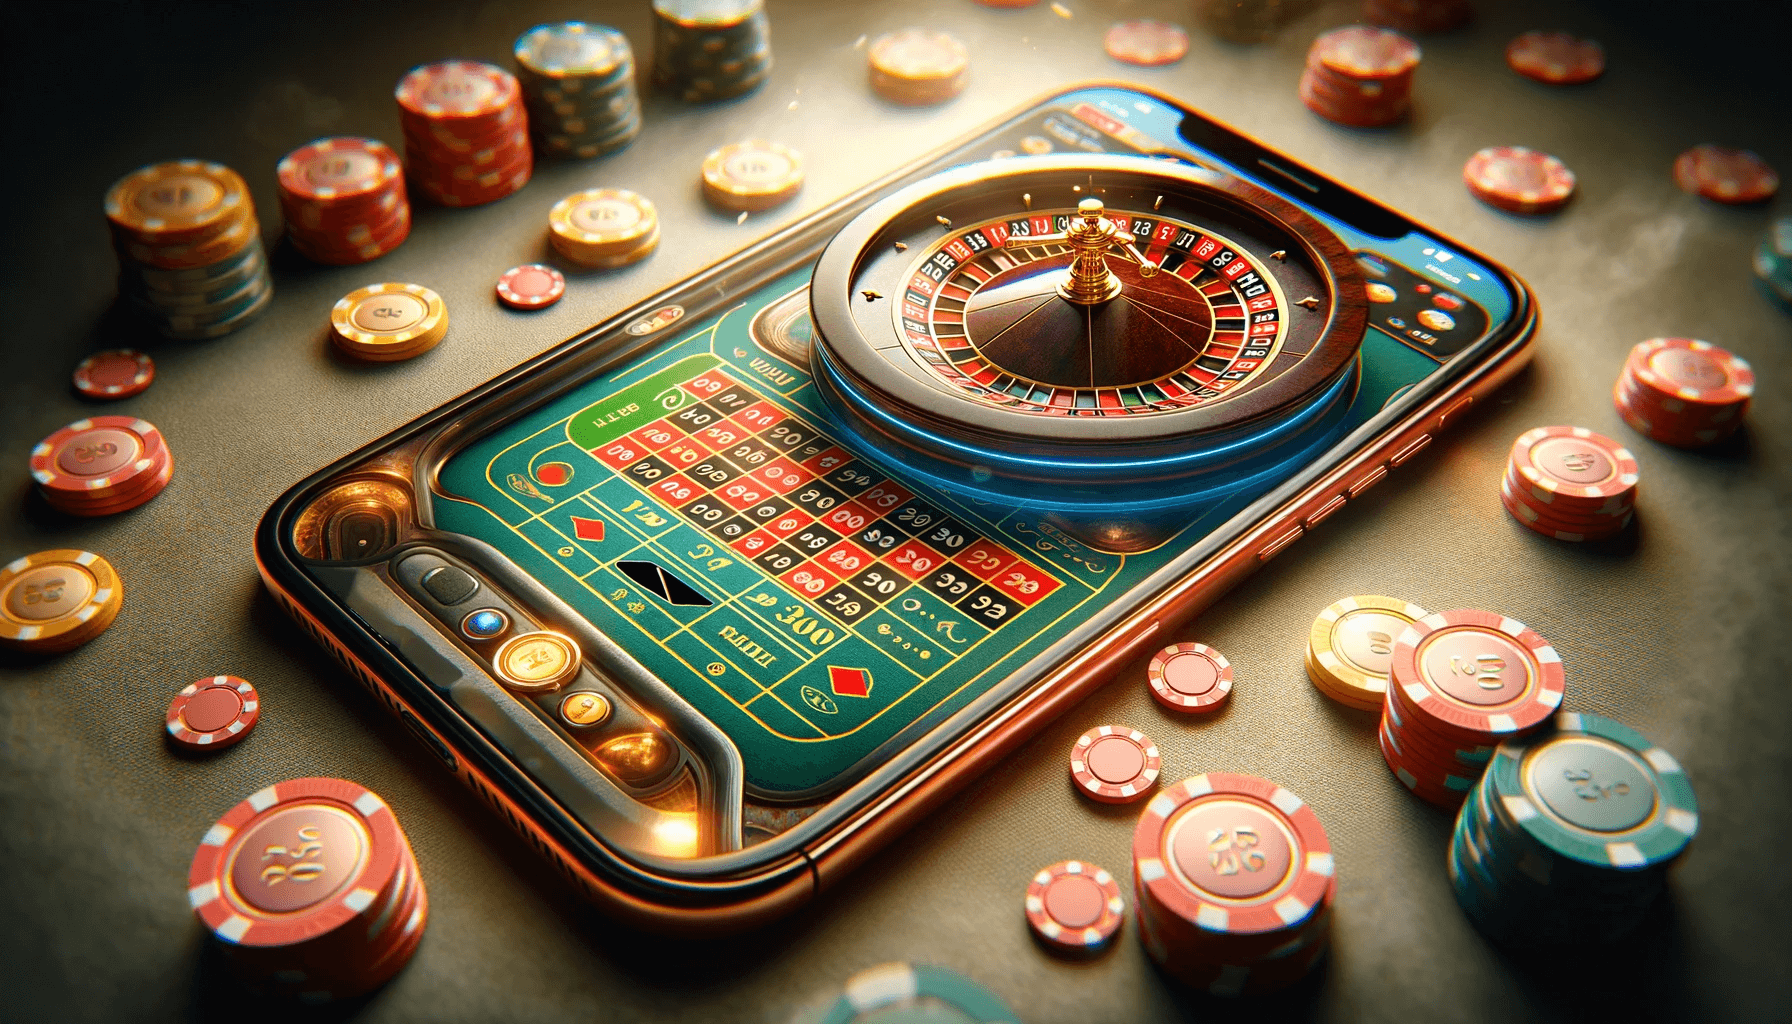 Mobilt casino med roulette på et bord